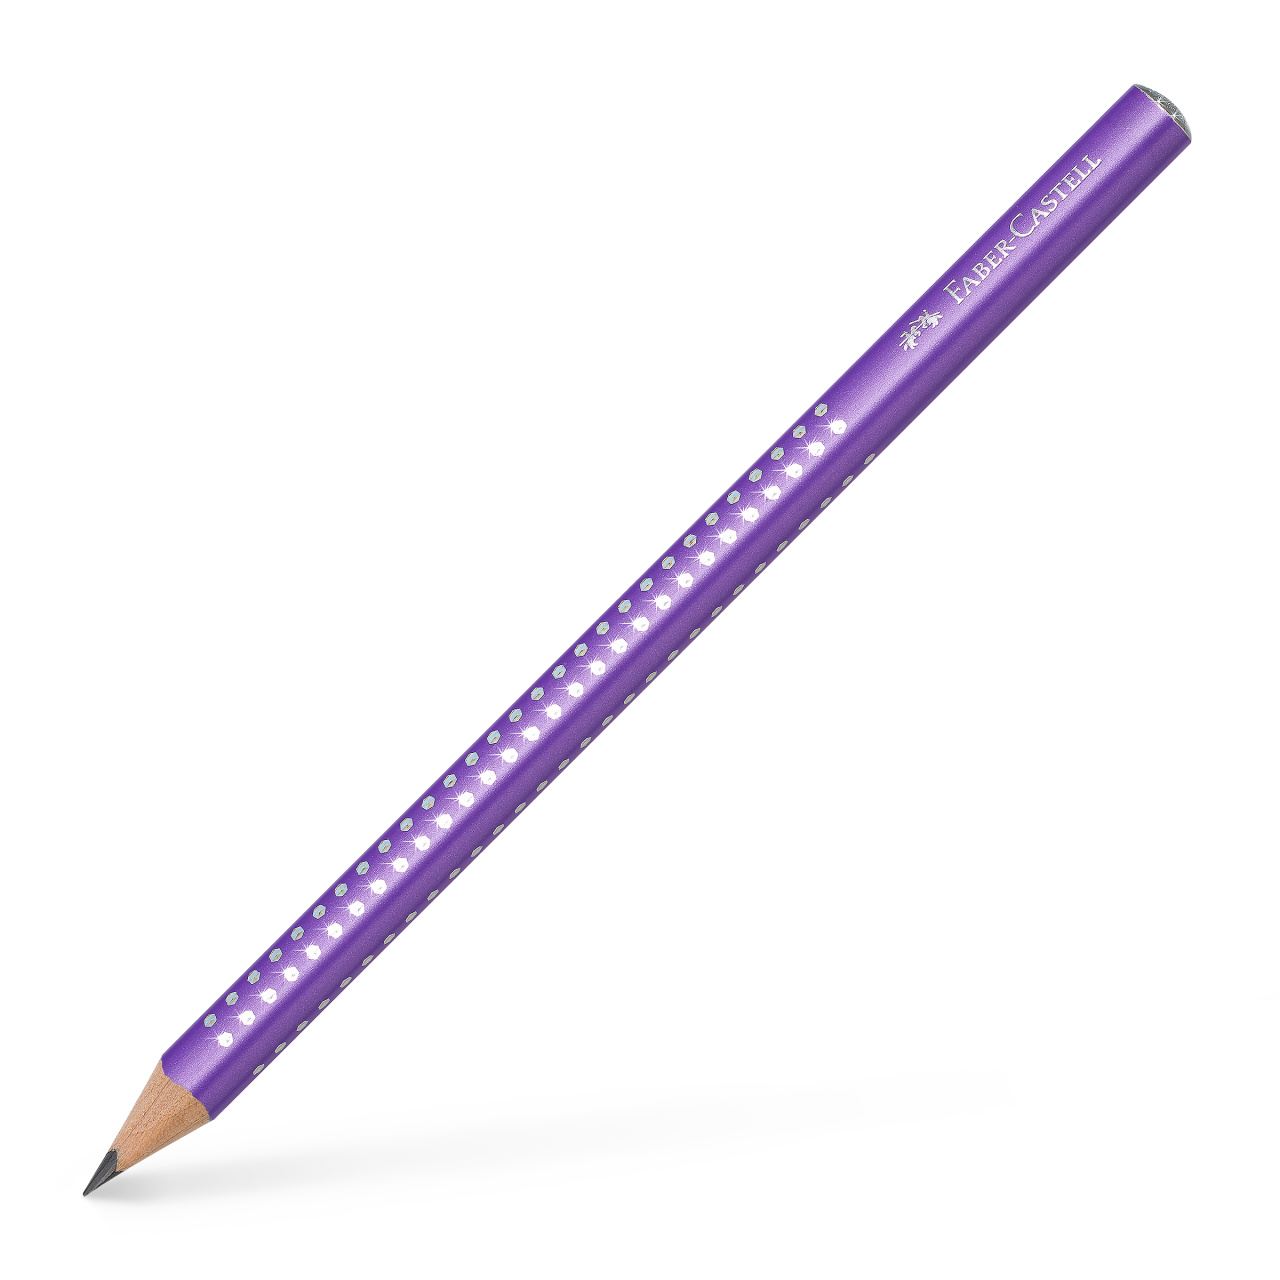 Faber-Castell - Grafitová tužka Jumbo Sparkle, perleťově purpurová